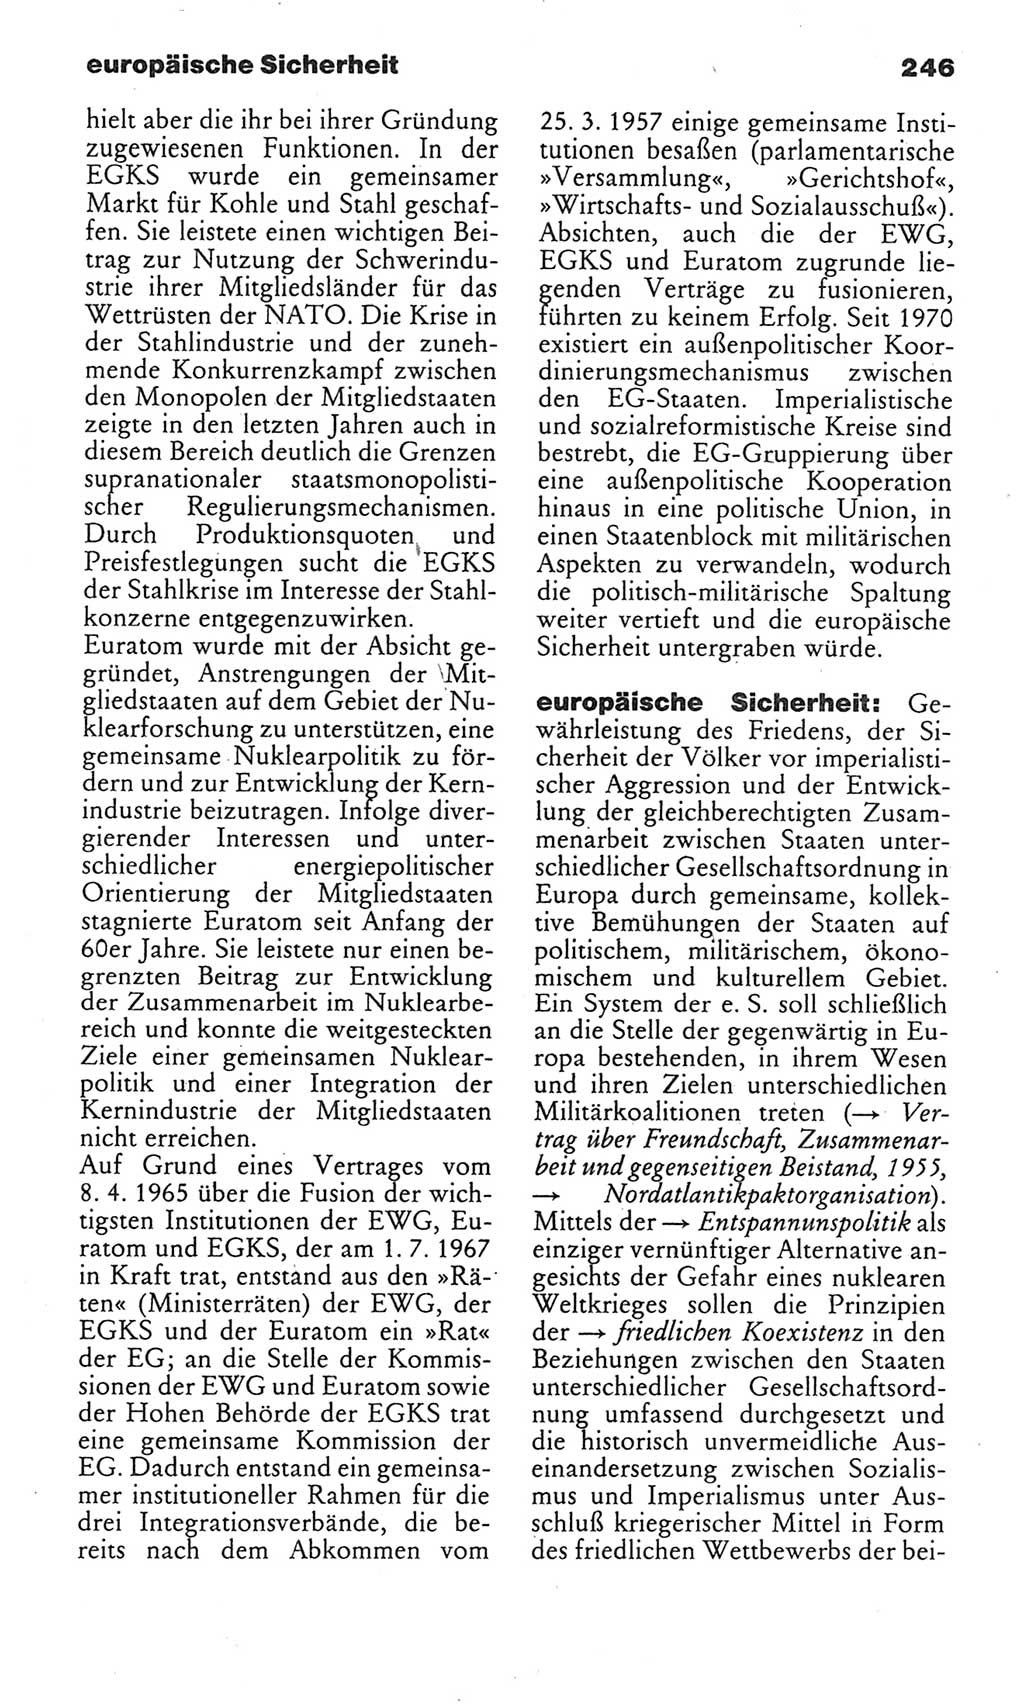 Kleines politisches Wörterbuch [Deutsche Demokratische Republik (DDR)] 1985, Seite 246 (Kl. pol. Wb. DDR 1985, S. 246)